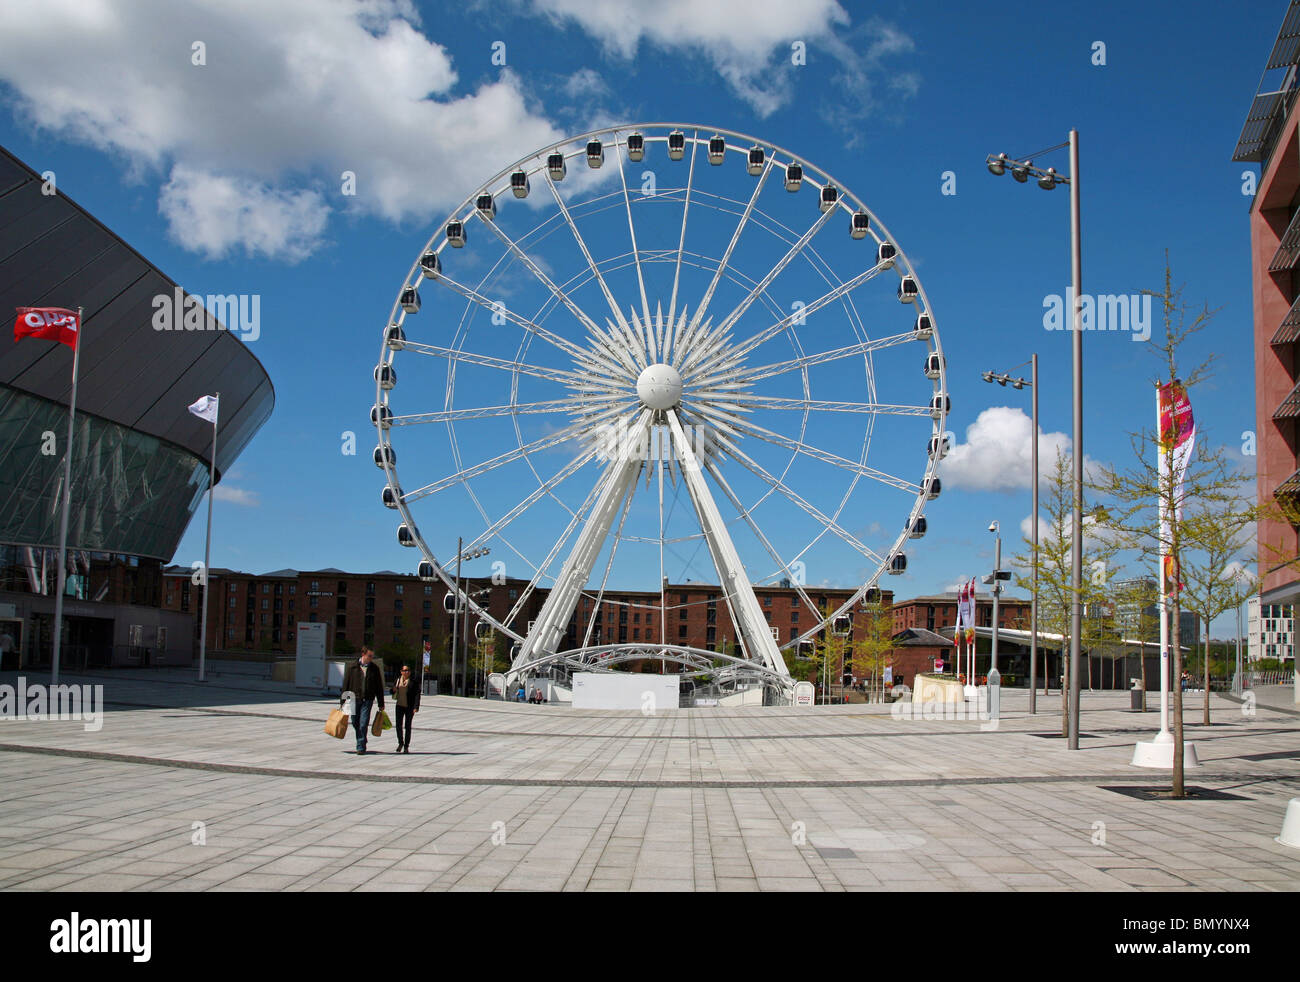 La grande ruota panoramica di fronte all'ingresso di Albert Dock una grande attrazione turistica della città di Liverpool Foto Stock